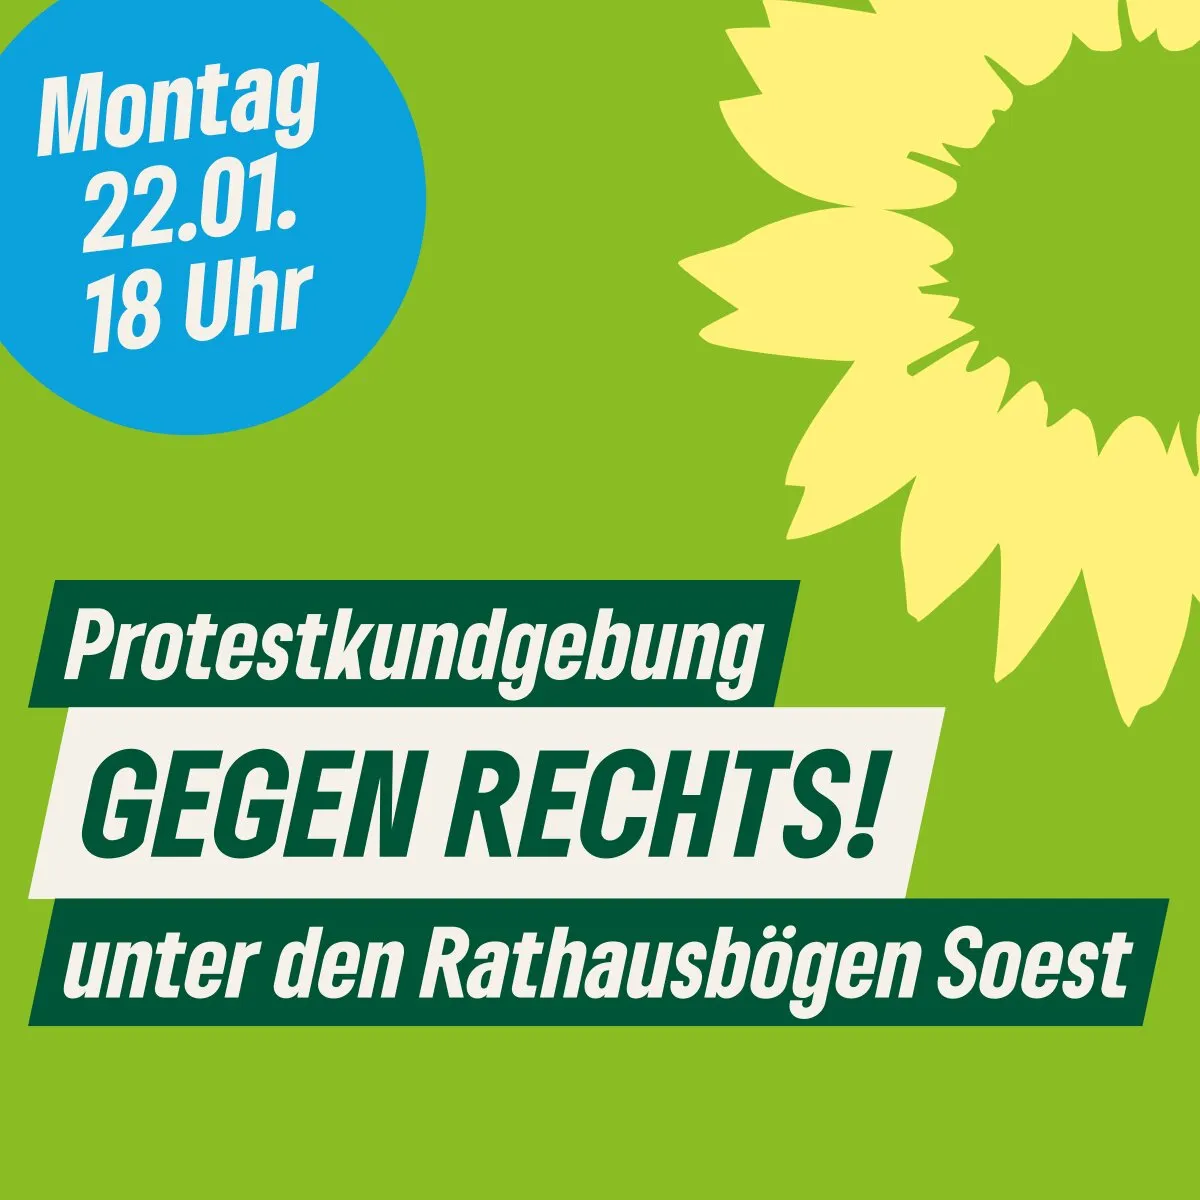 Demo „gegen Rechts“ in Soest ohne Bürgermeisterpartei CDU: SPD-Ratsherr kritisiert Begründung als „dummdreist“